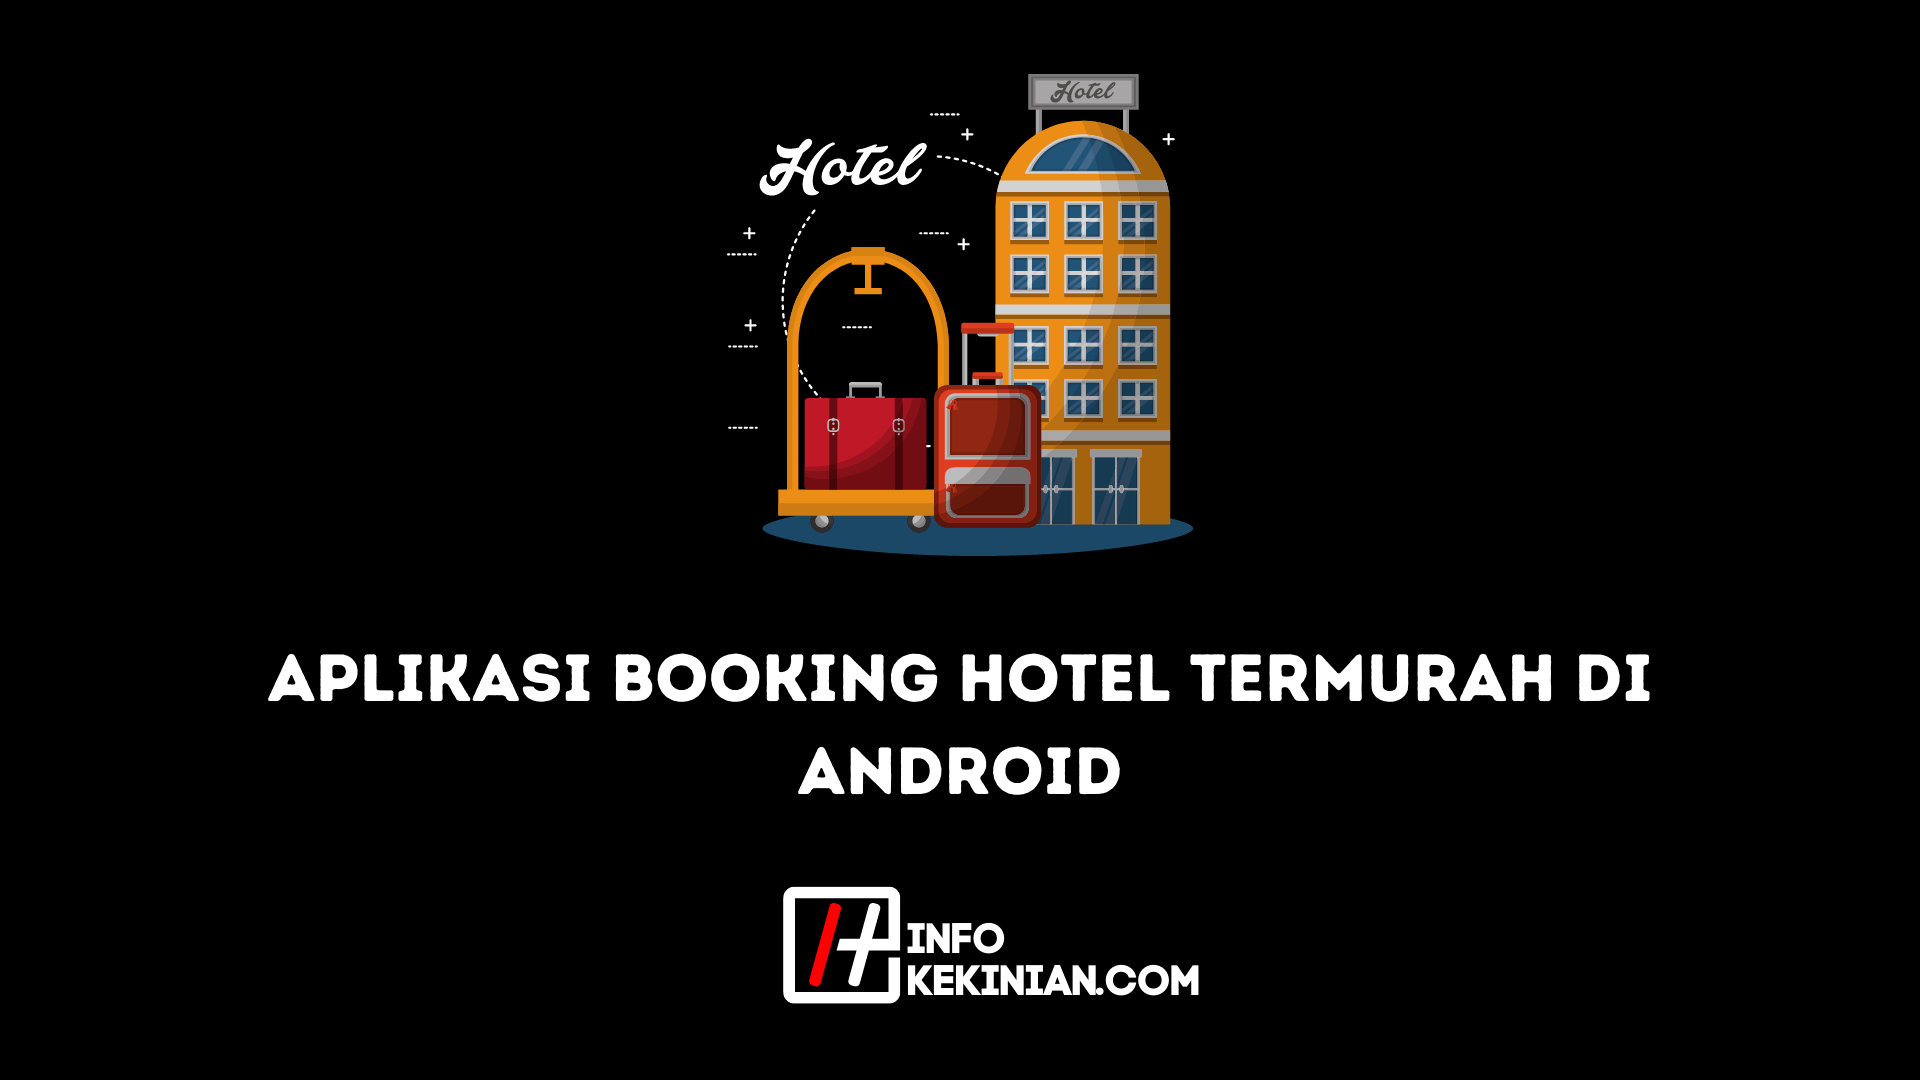 Die billigste Hotelbuchungsanwendung für Android